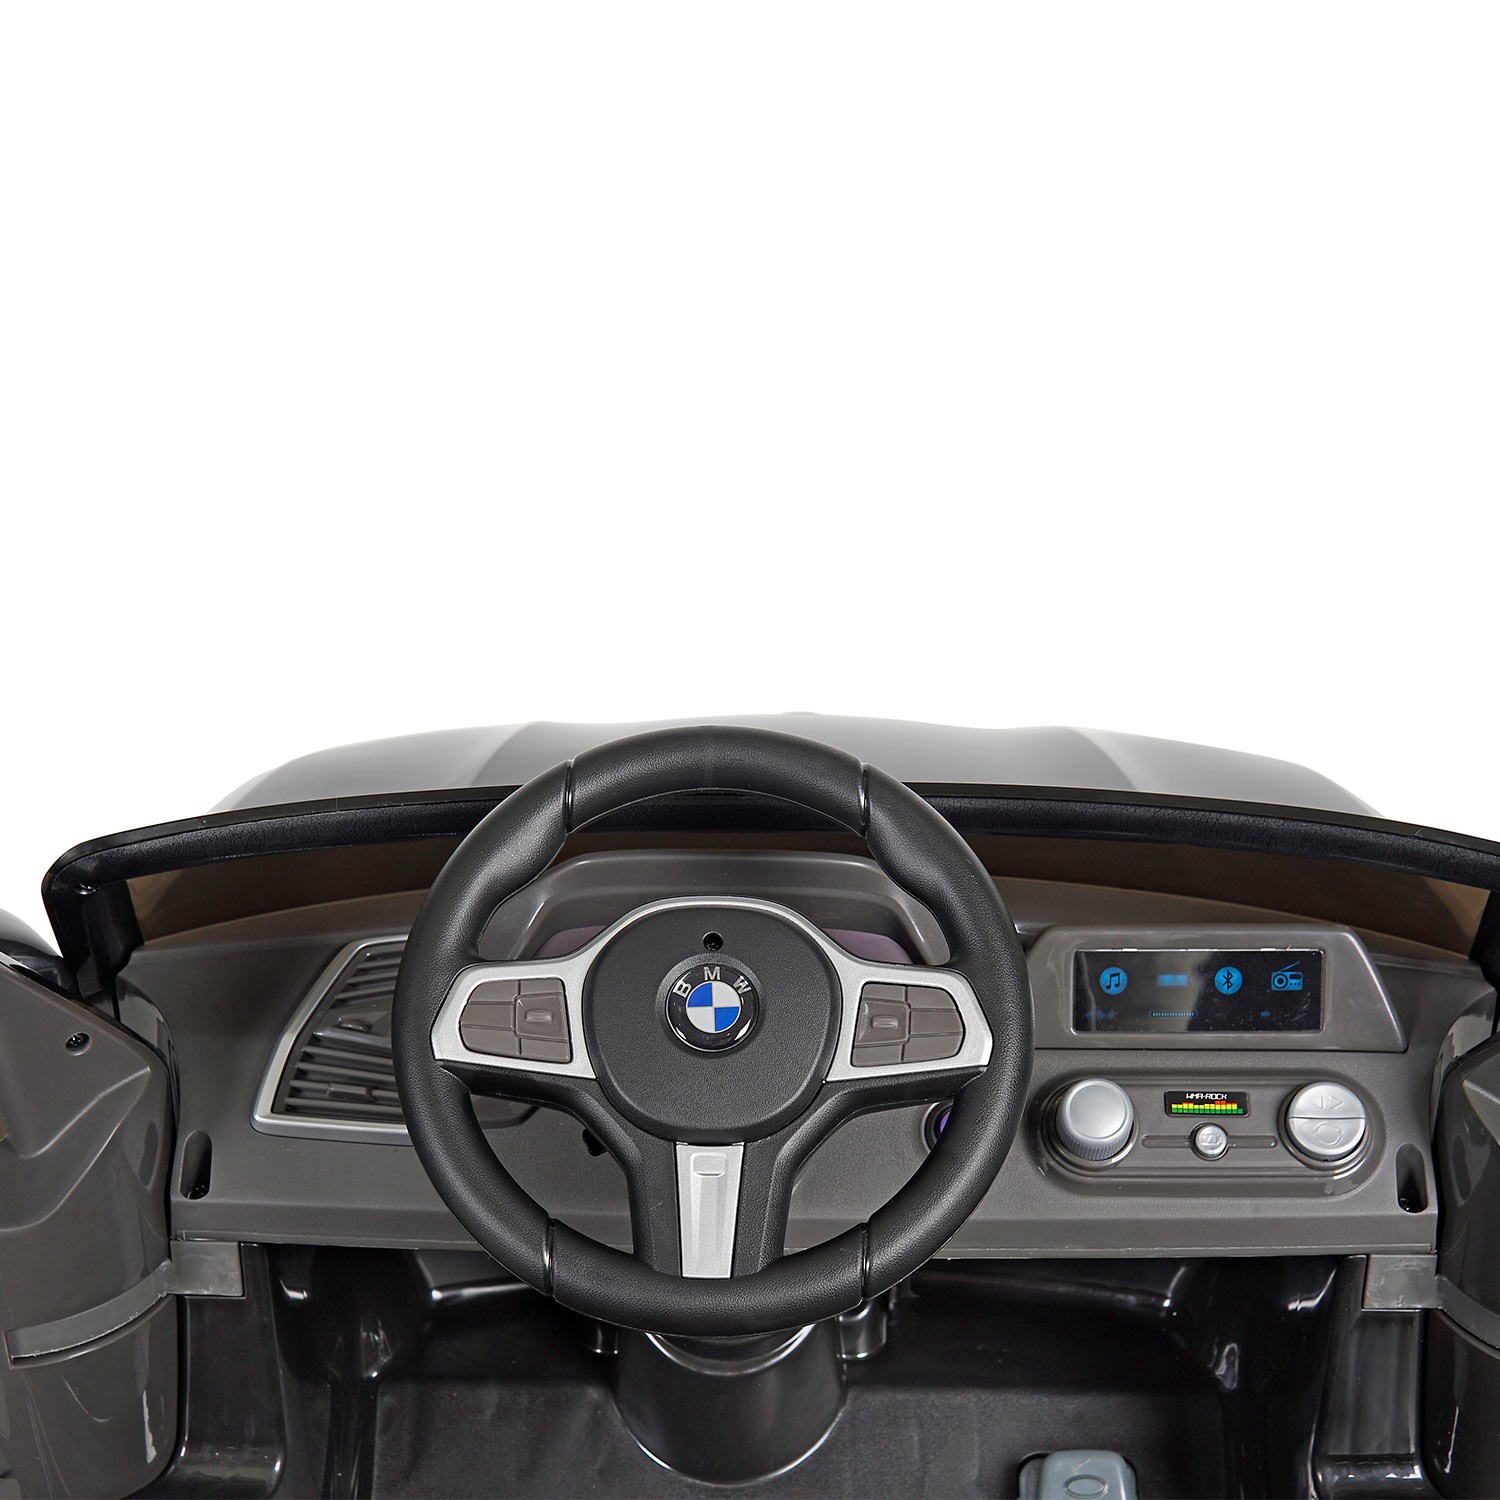 Rollplay BMW X5 Akülü Araba W491SZQHG4 Siyah